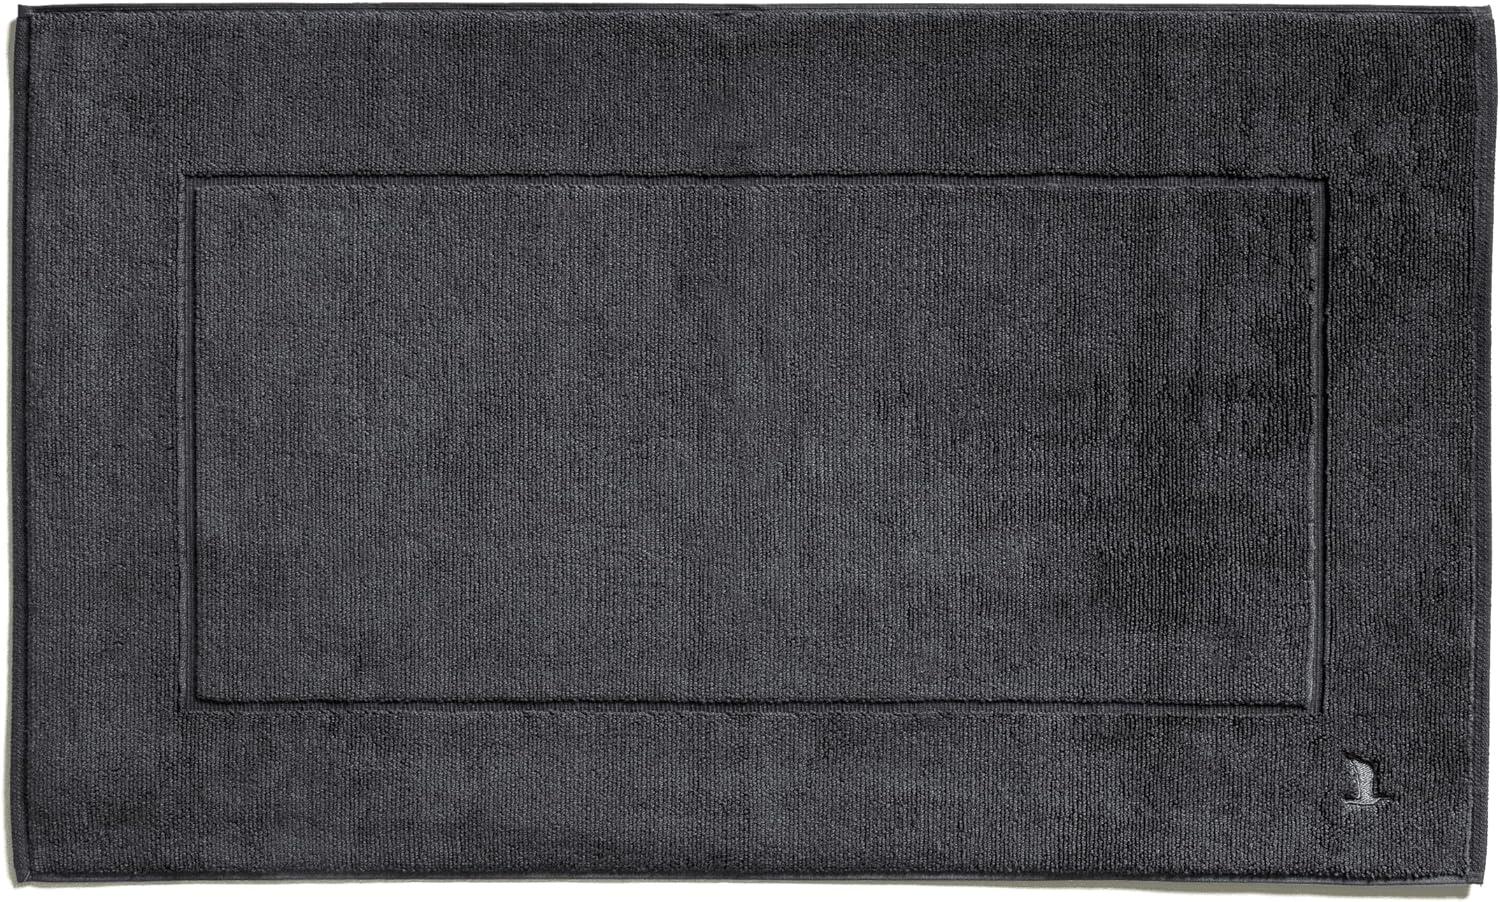 Möve Superwuschel Badteppich mit eingesticktem Logo, Baumwolle, Dark Grey, 60 x 100 cm Bild 1